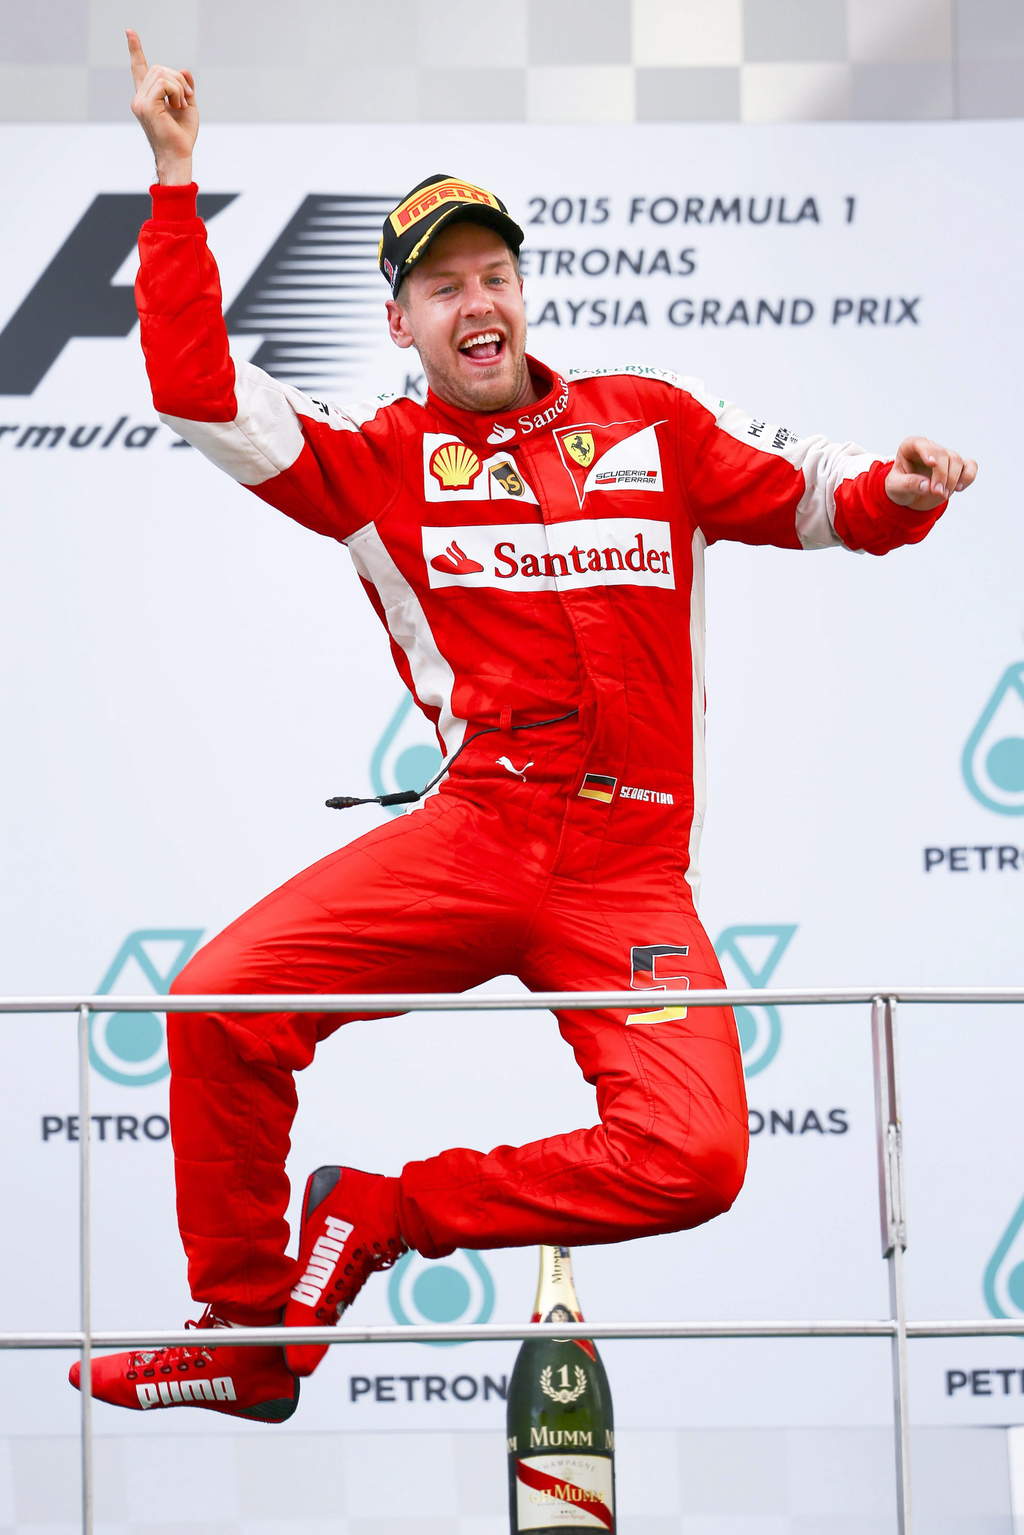 'Sería fabuloso complicarles la vida (a Mercedes), las cosas han sido demasiado fáciles para ellos en los últimos meses”
- Sebastian Vettel, piloto de Ferrari